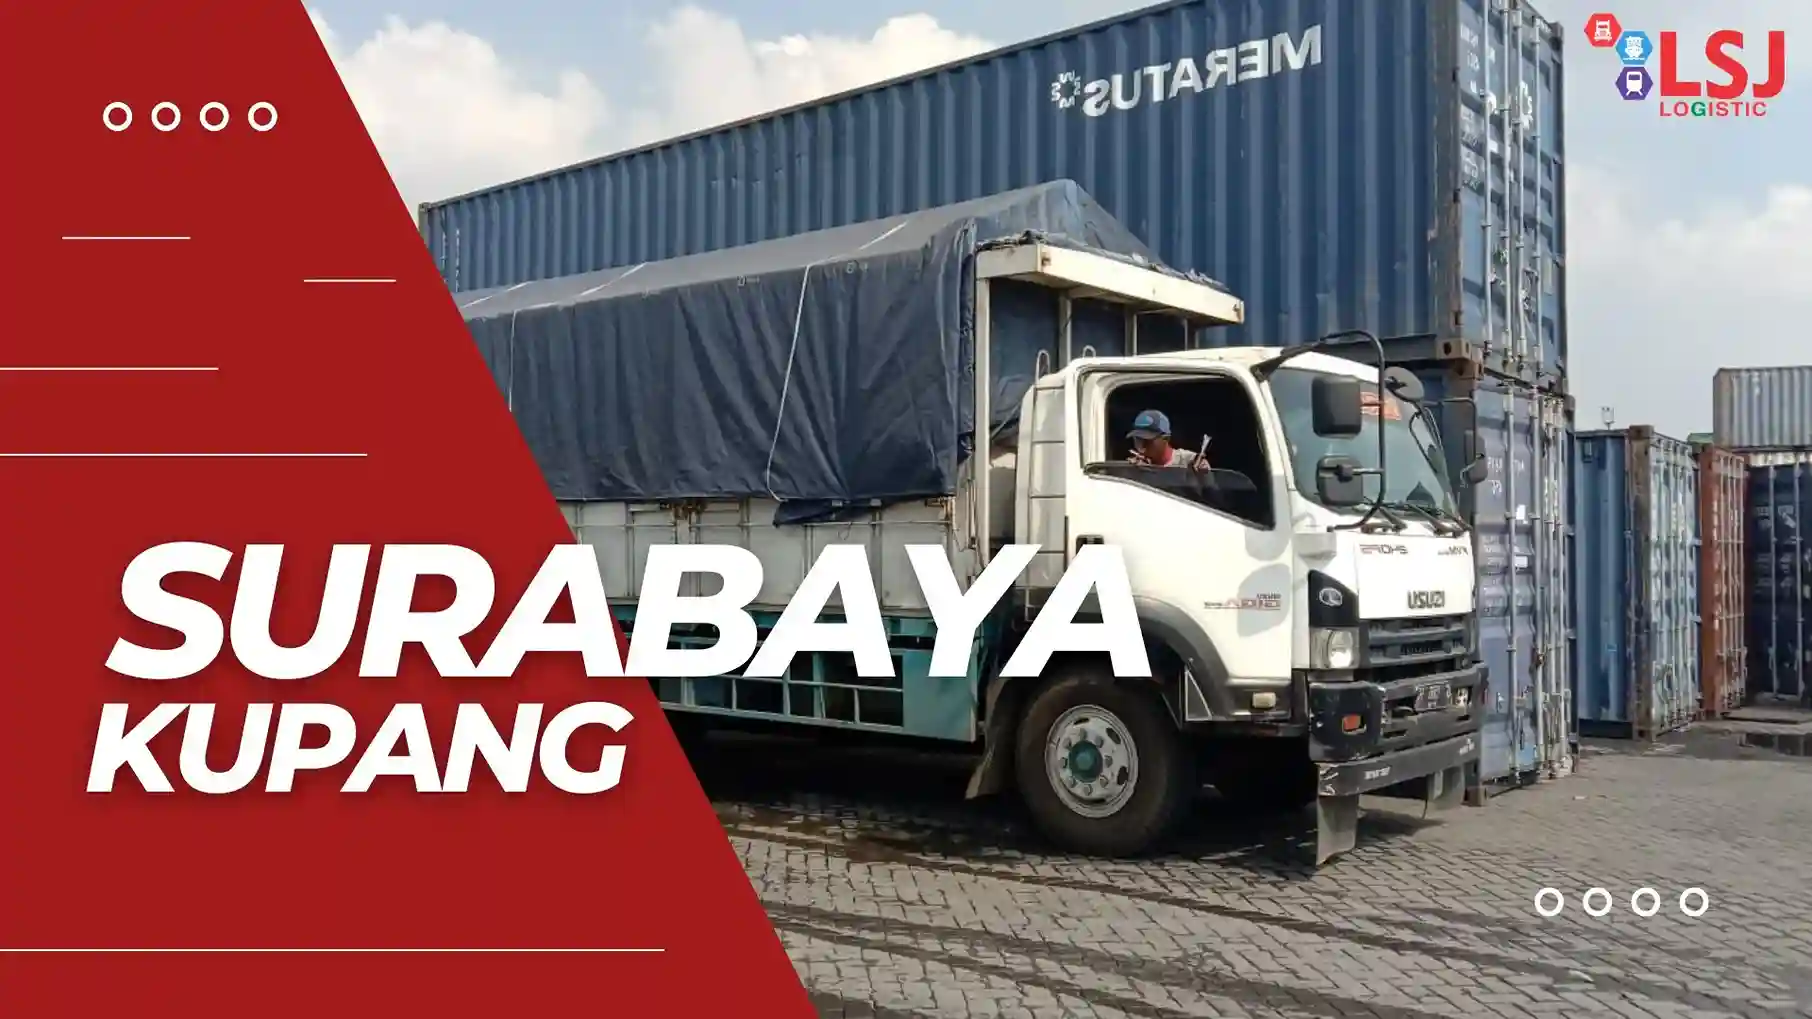 Ongkos Kirim Container Surabaya Kupang